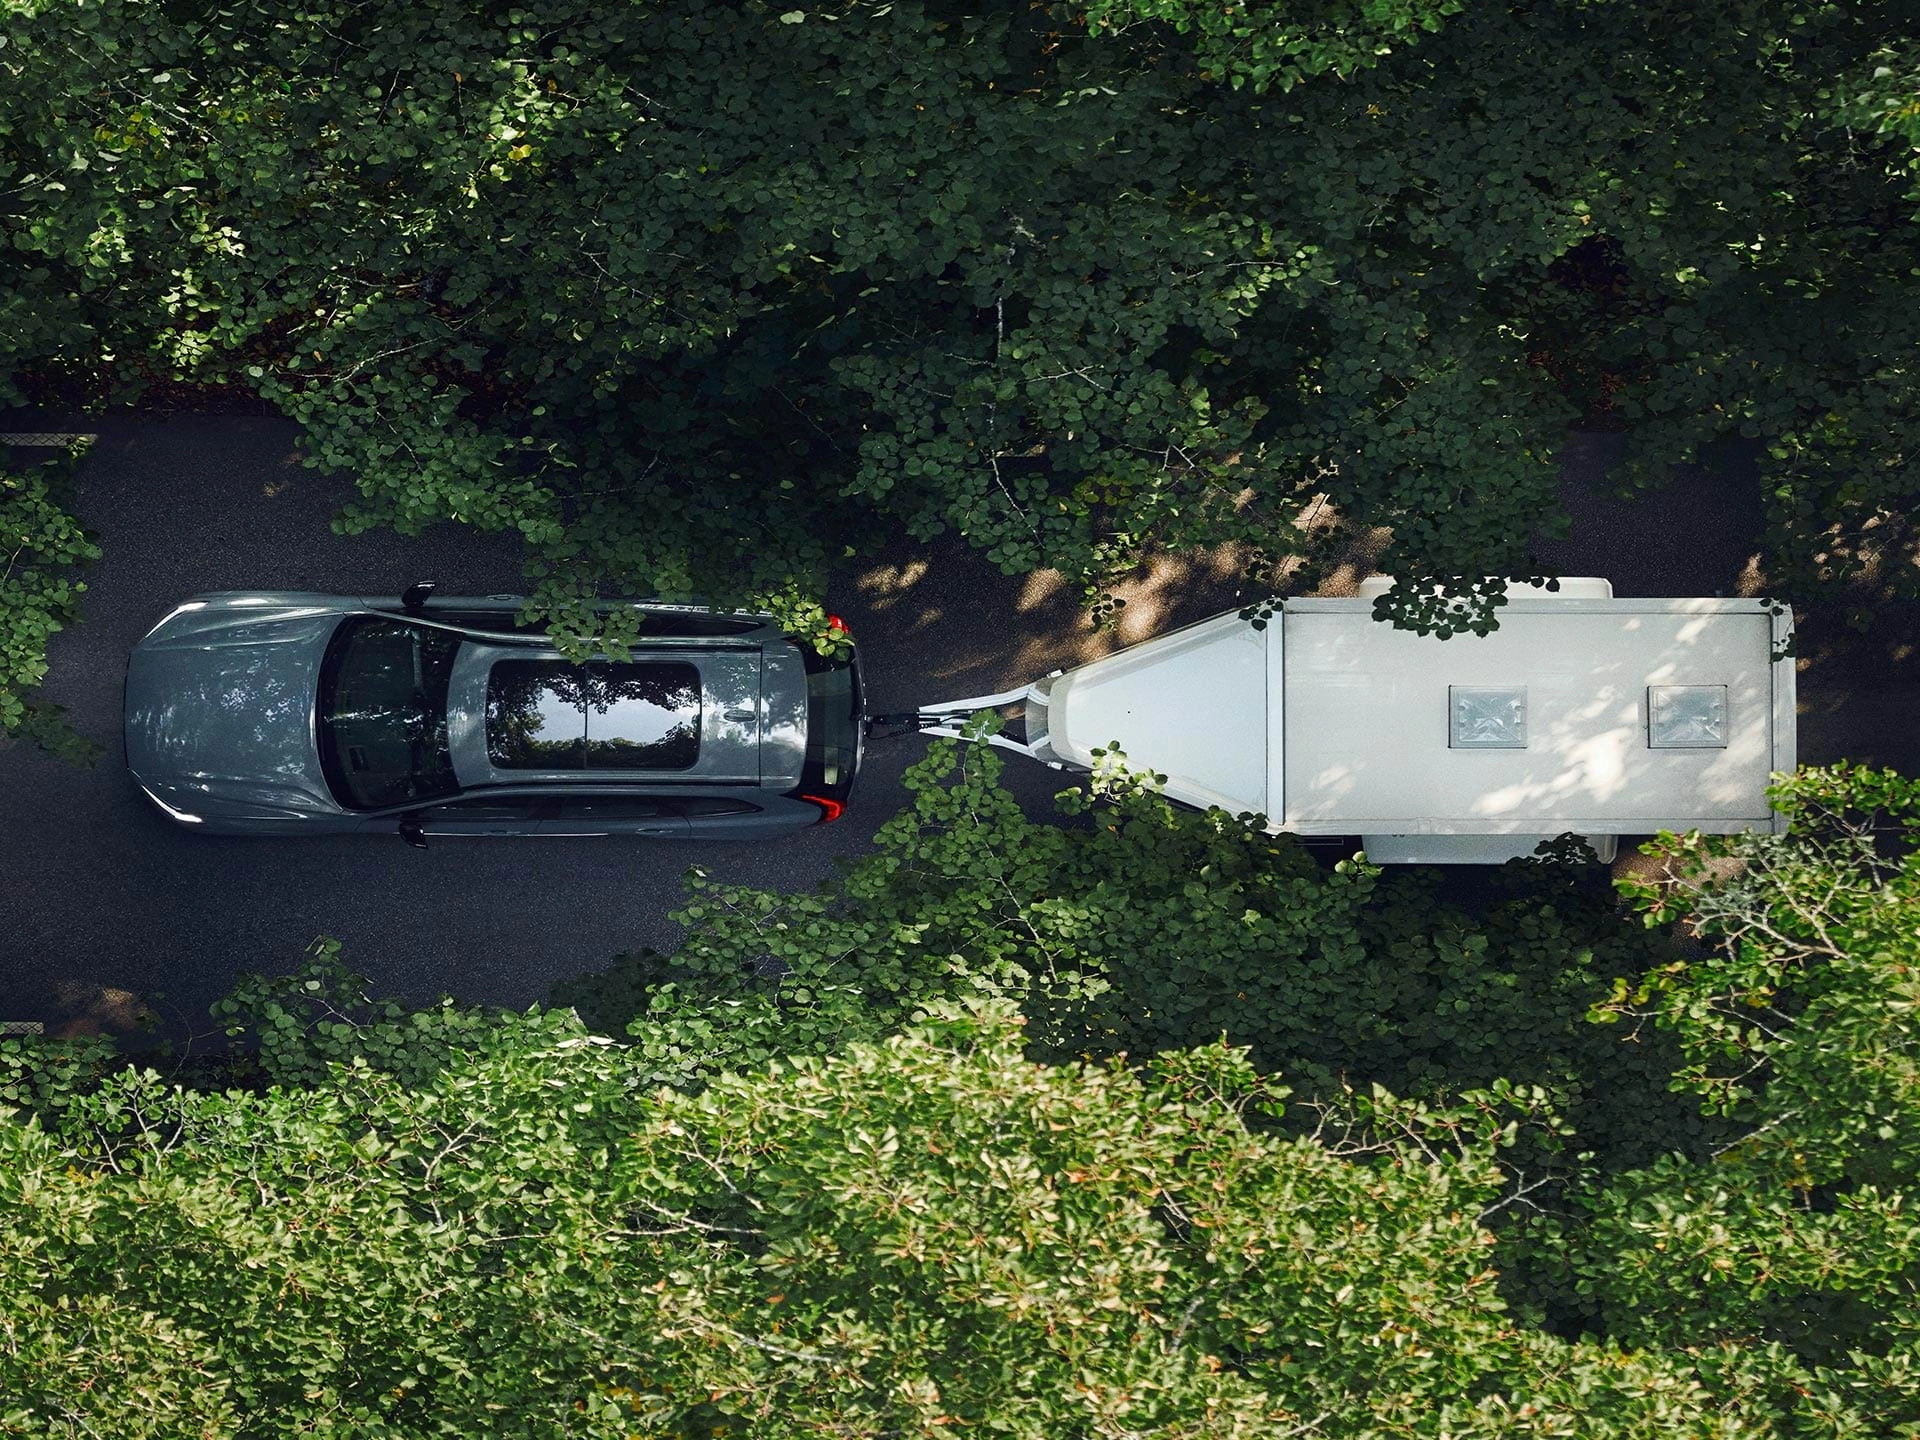 Vue du dessus d’un VUS Volvo tractant une remorque blanche le long d’une route verdoyante par une journée ensoleillée.